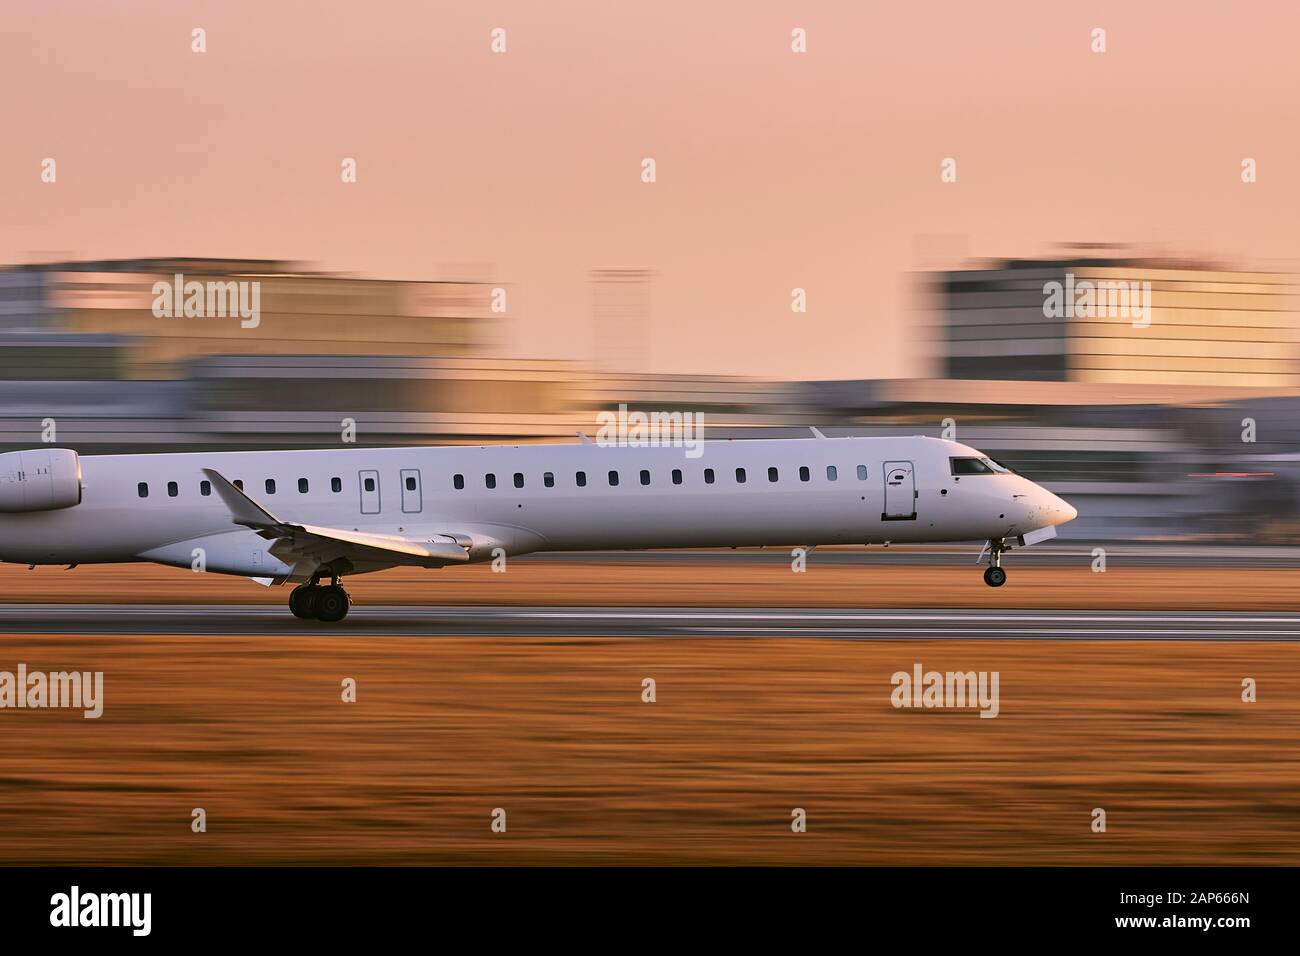 Verkehr am Flughafen. Flugzeug Landung auf Piste gegen Terminal Gebäude im Golden Sunset (verschwommene Bewegung). Stockfoto